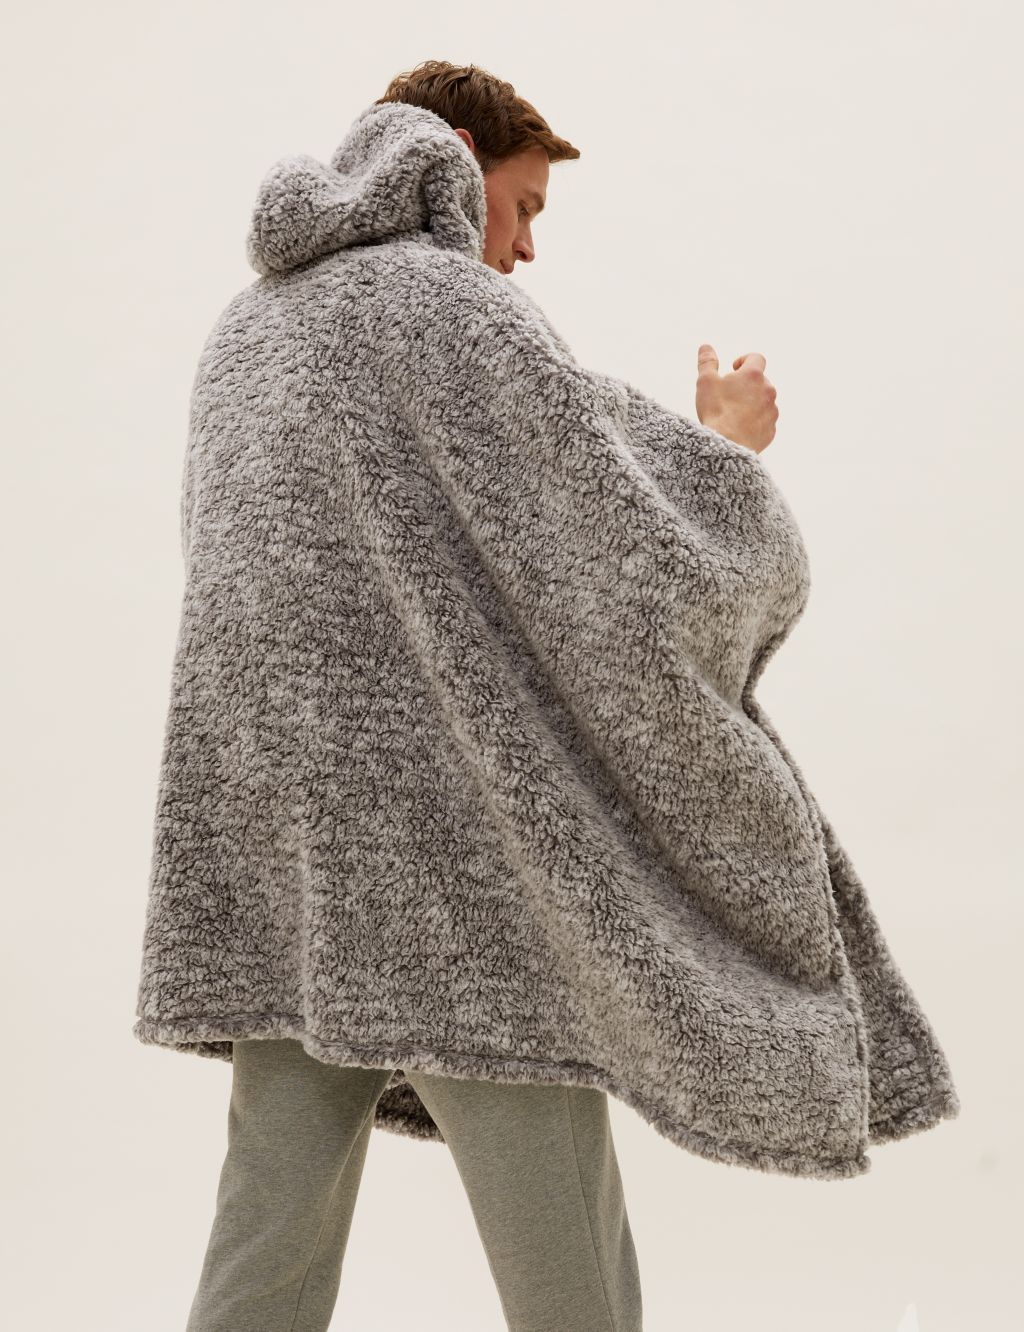 Teddy Fleece Adults' Hooded Blanket image 1